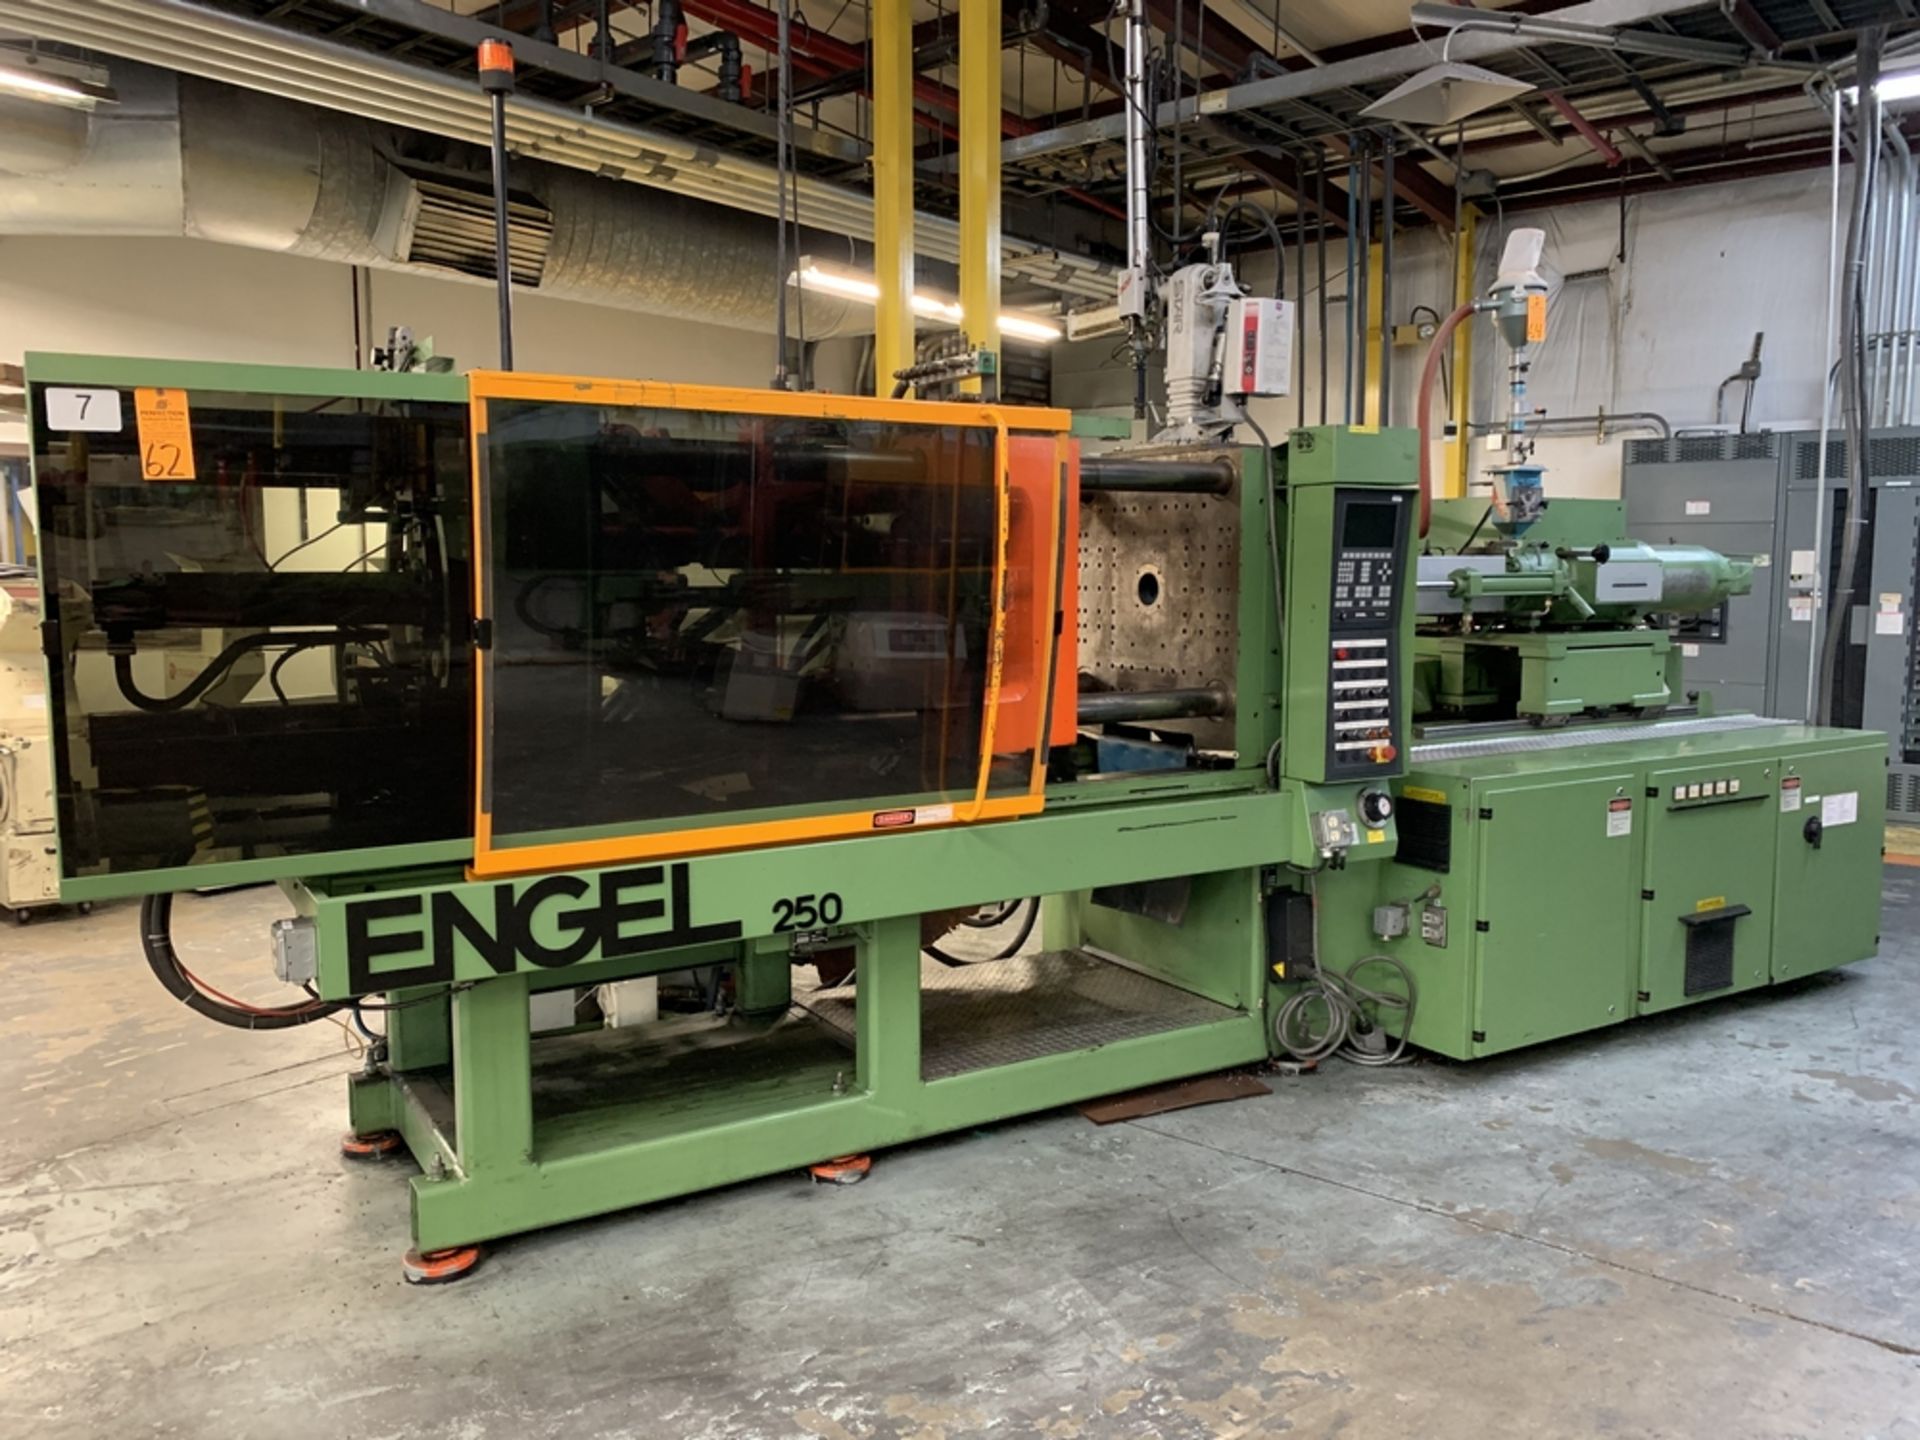 ENGEL ES700/250 Injection Molding Machine, s/n 7850-250-96, 250 Ton, 15.9 Oz Shot, (Mach # 7)